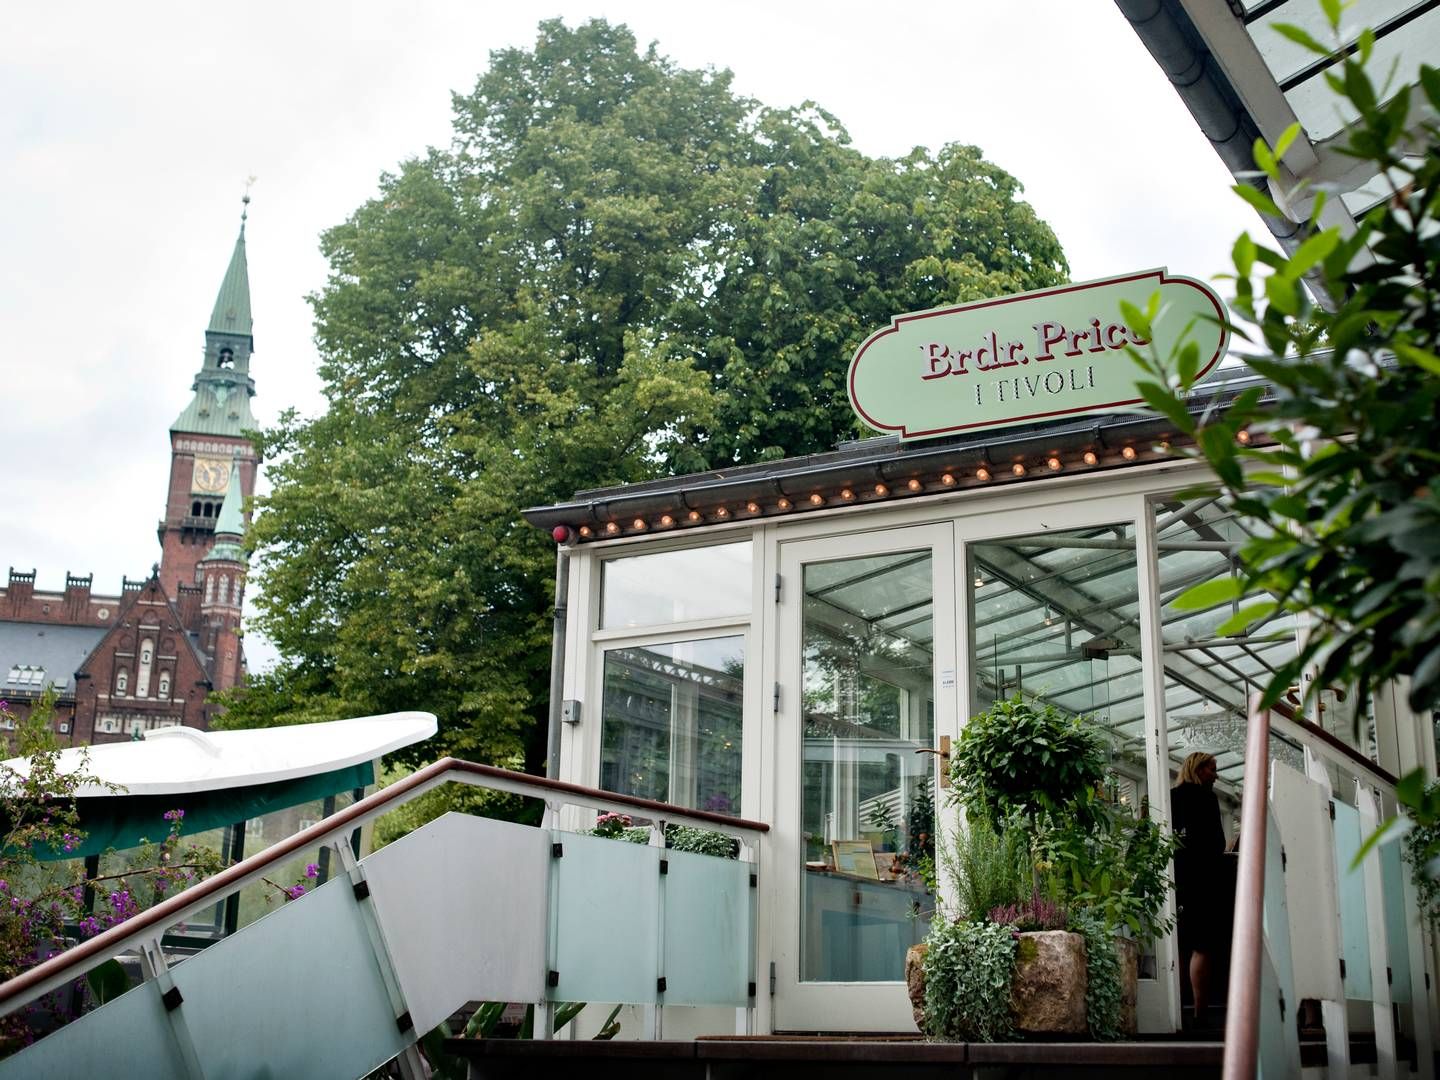 Restaurant Brdr. Price i Tivoli | Foto: Liv Høybye